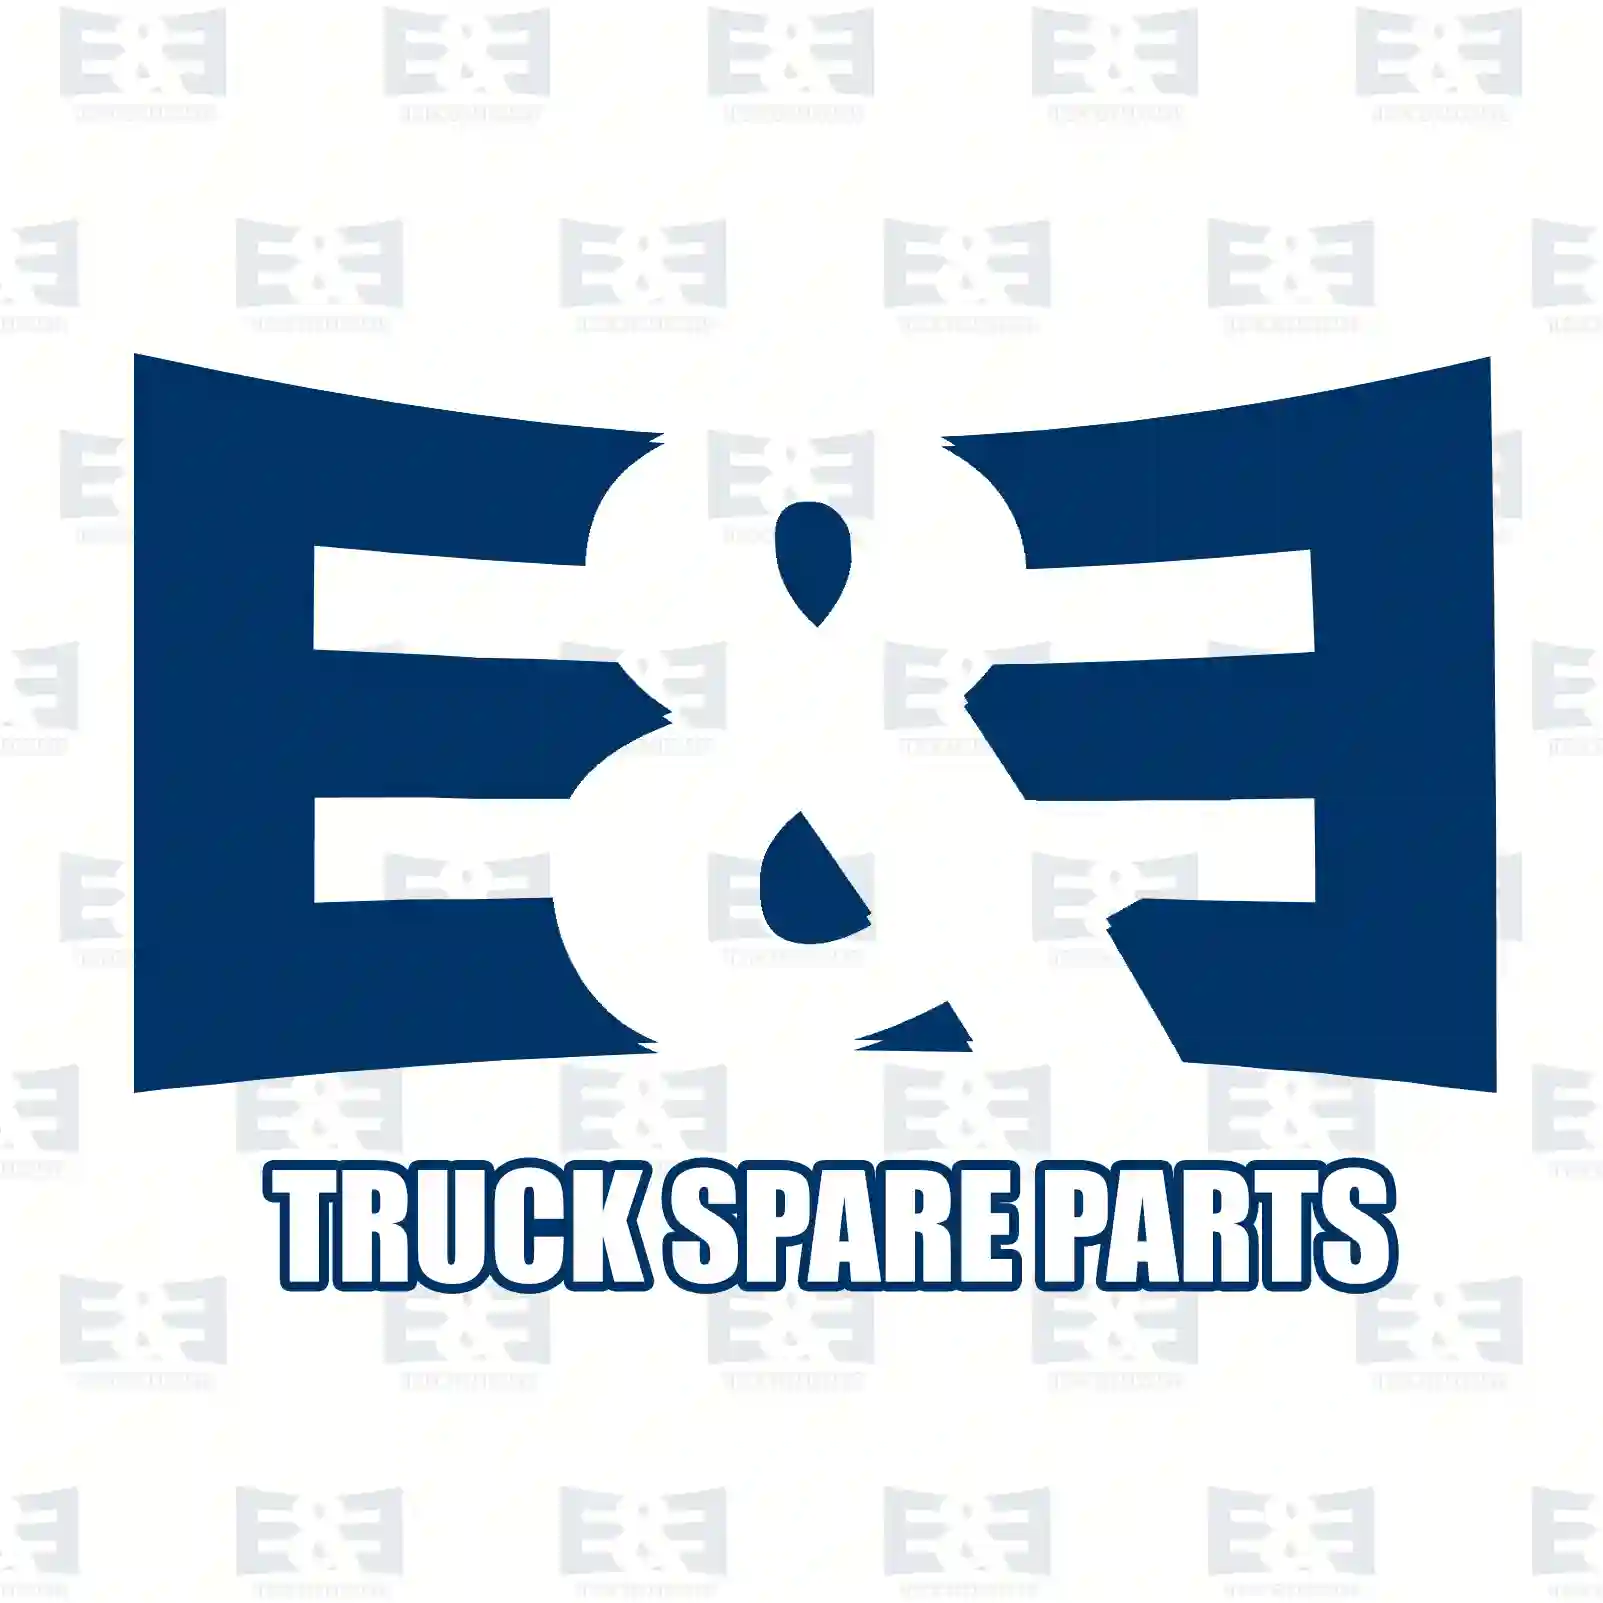 Wheel hub, with bearing, 2E2284139, 1942755S, 2290553S ||  2E2284139 E&E Truck Spare Parts | Truck Spare Parts, Auotomotive Spare Parts Wheel hub, with bearing, 2E2284139, 1942755S, 2290553S ||  2E2284139 E&E Truck Spare Parts | Truck Spare Parts, Auotomotive Spare Parts